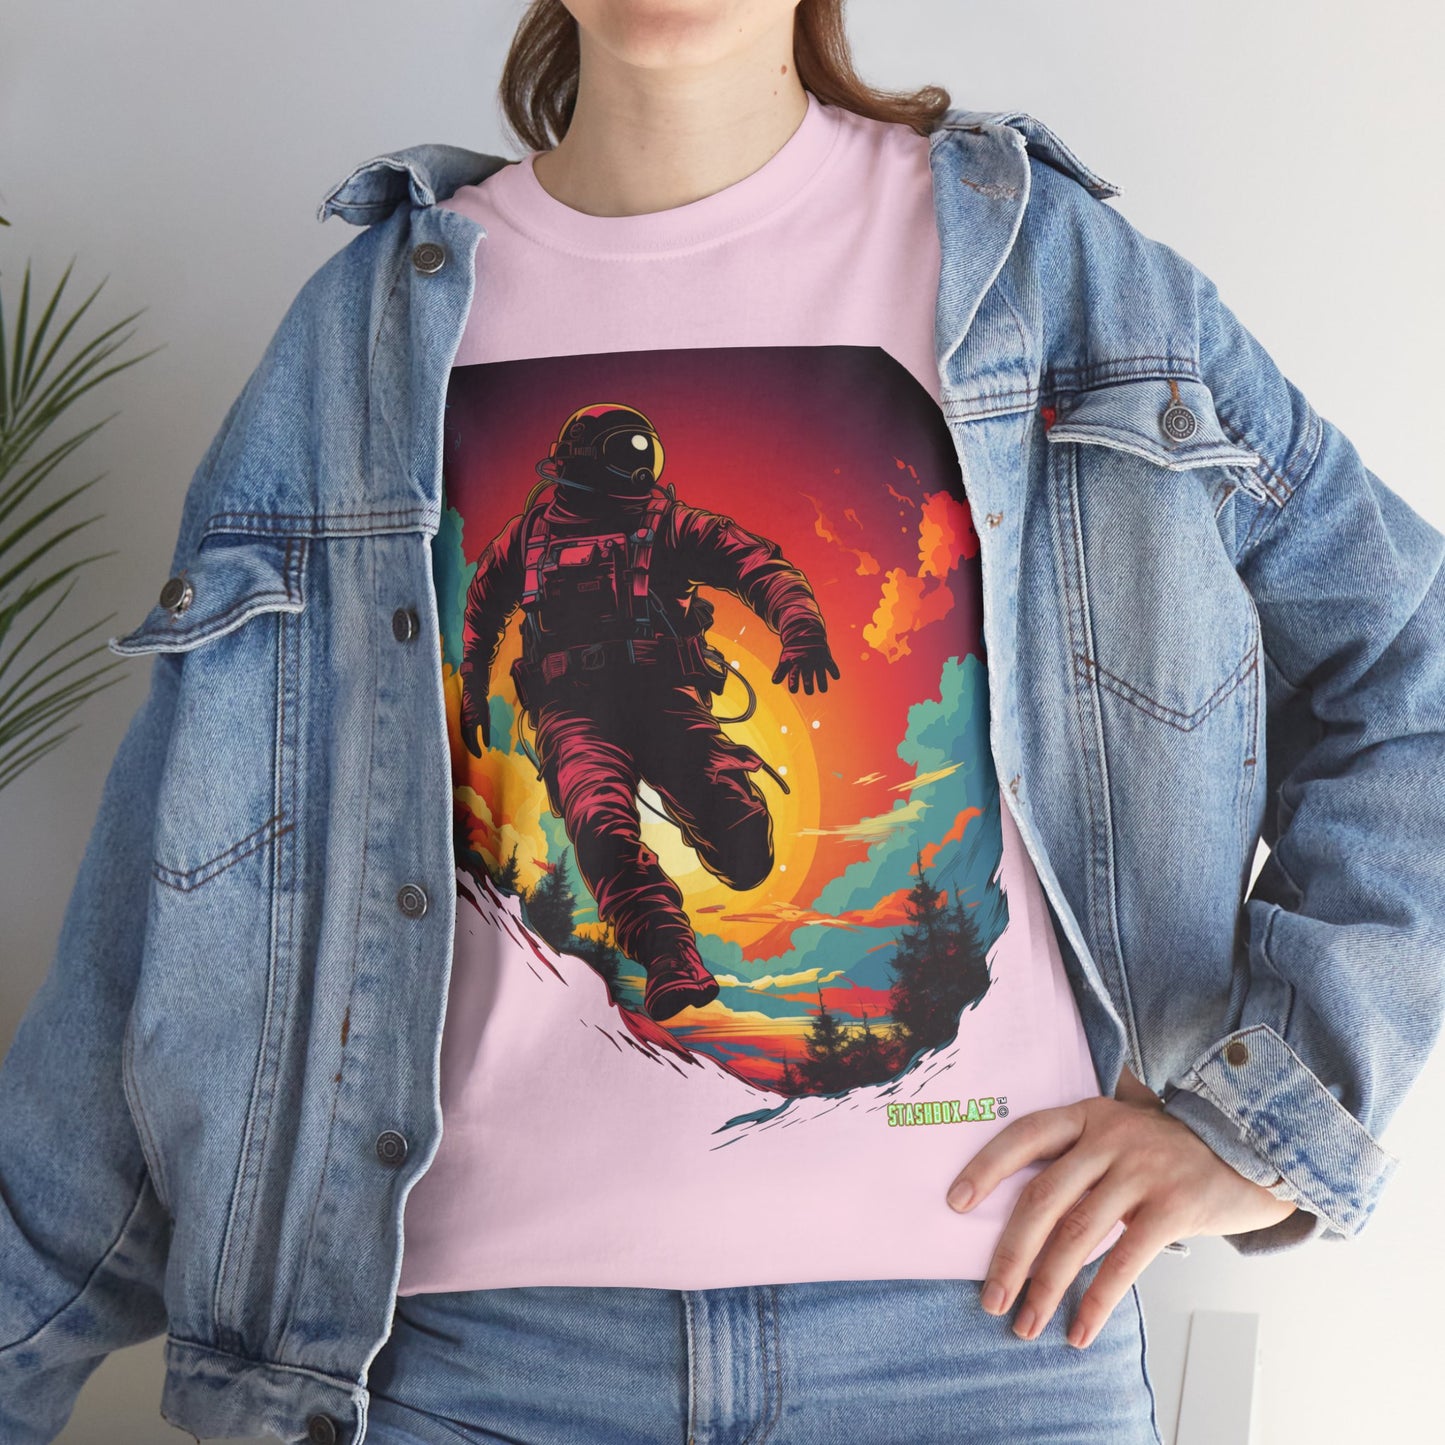 T-Shirt Heavy Cotton Unisex - Colorful Astronaut 001